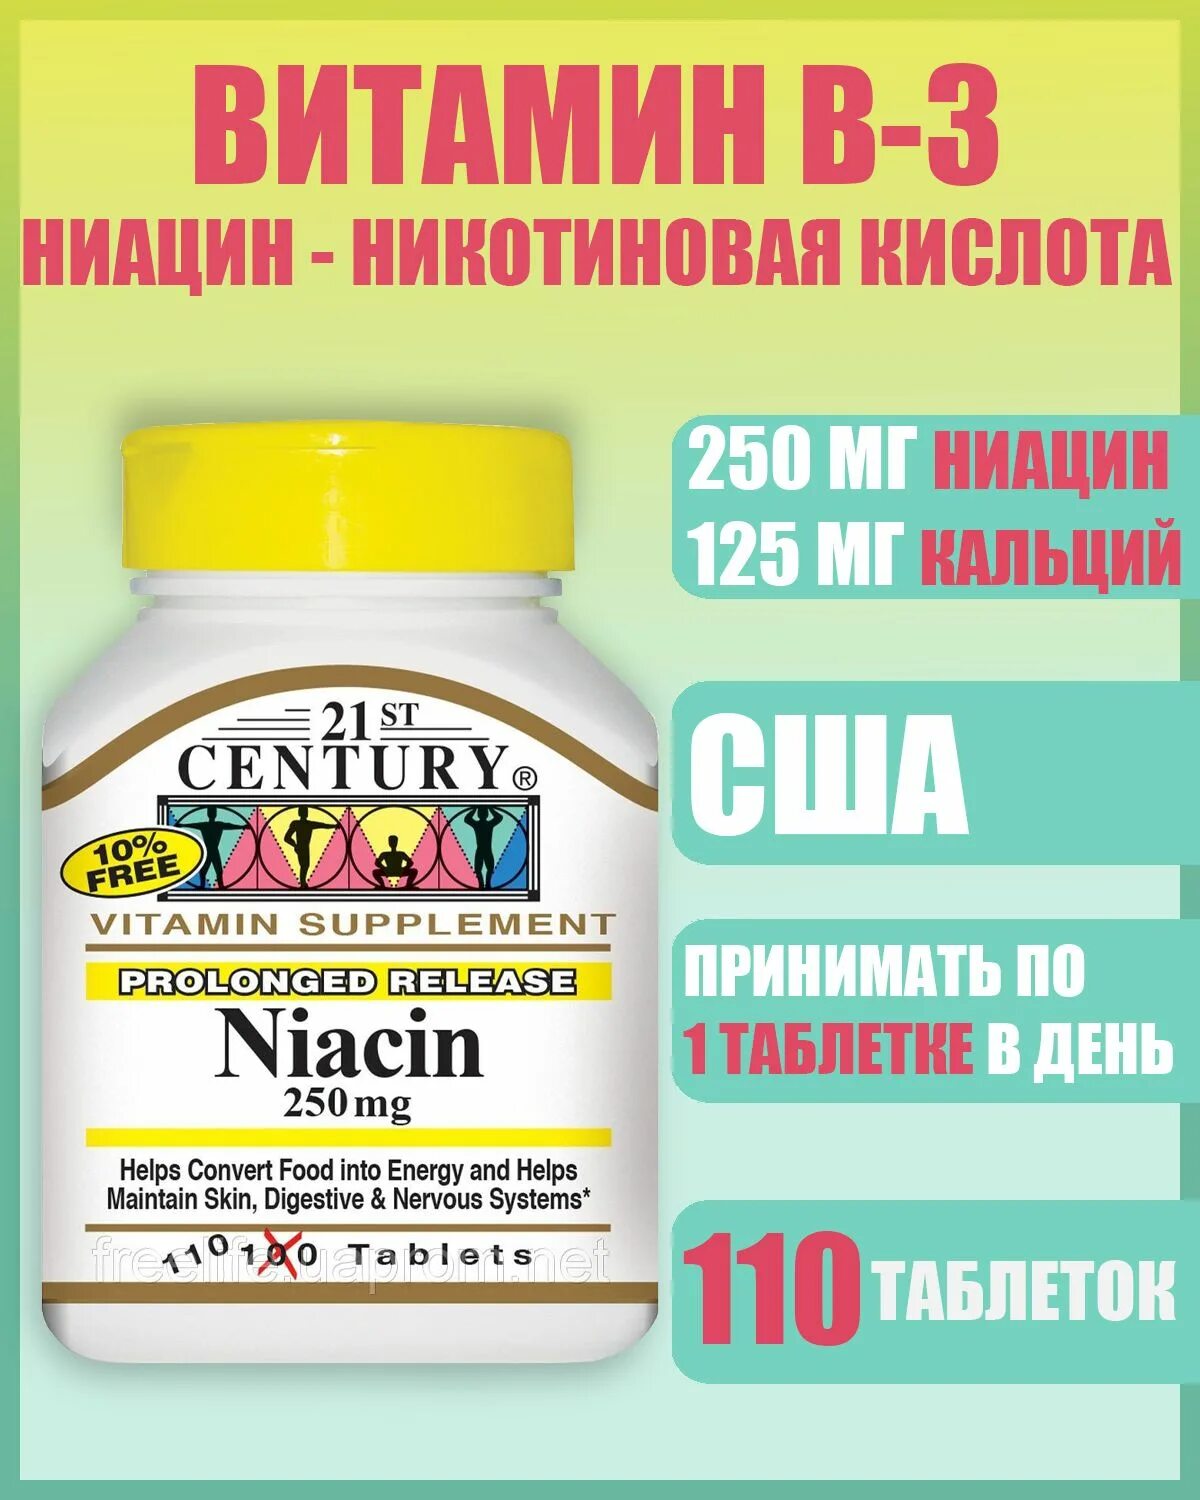 Ниацин какой витамин. Ниацин витамин. 21 Century витамин с 250 мг. Ikjskvun ниацин.